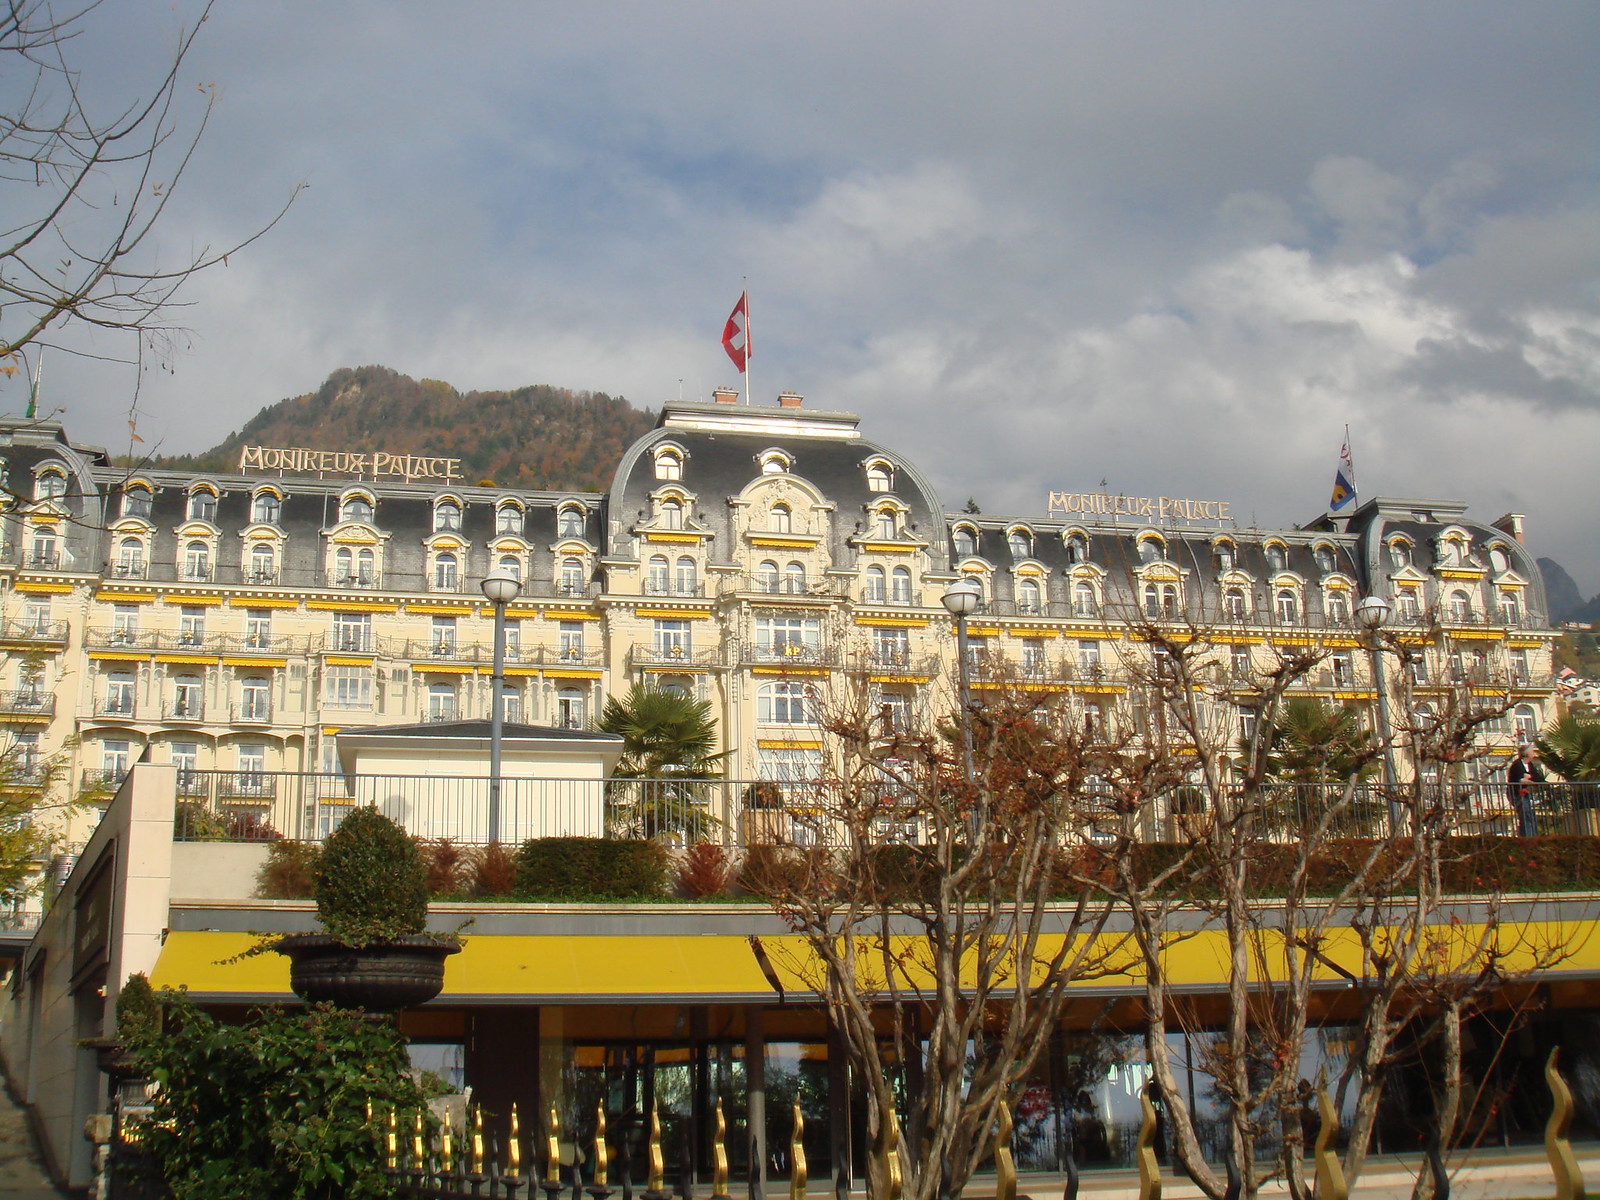 1 Montreux Palace